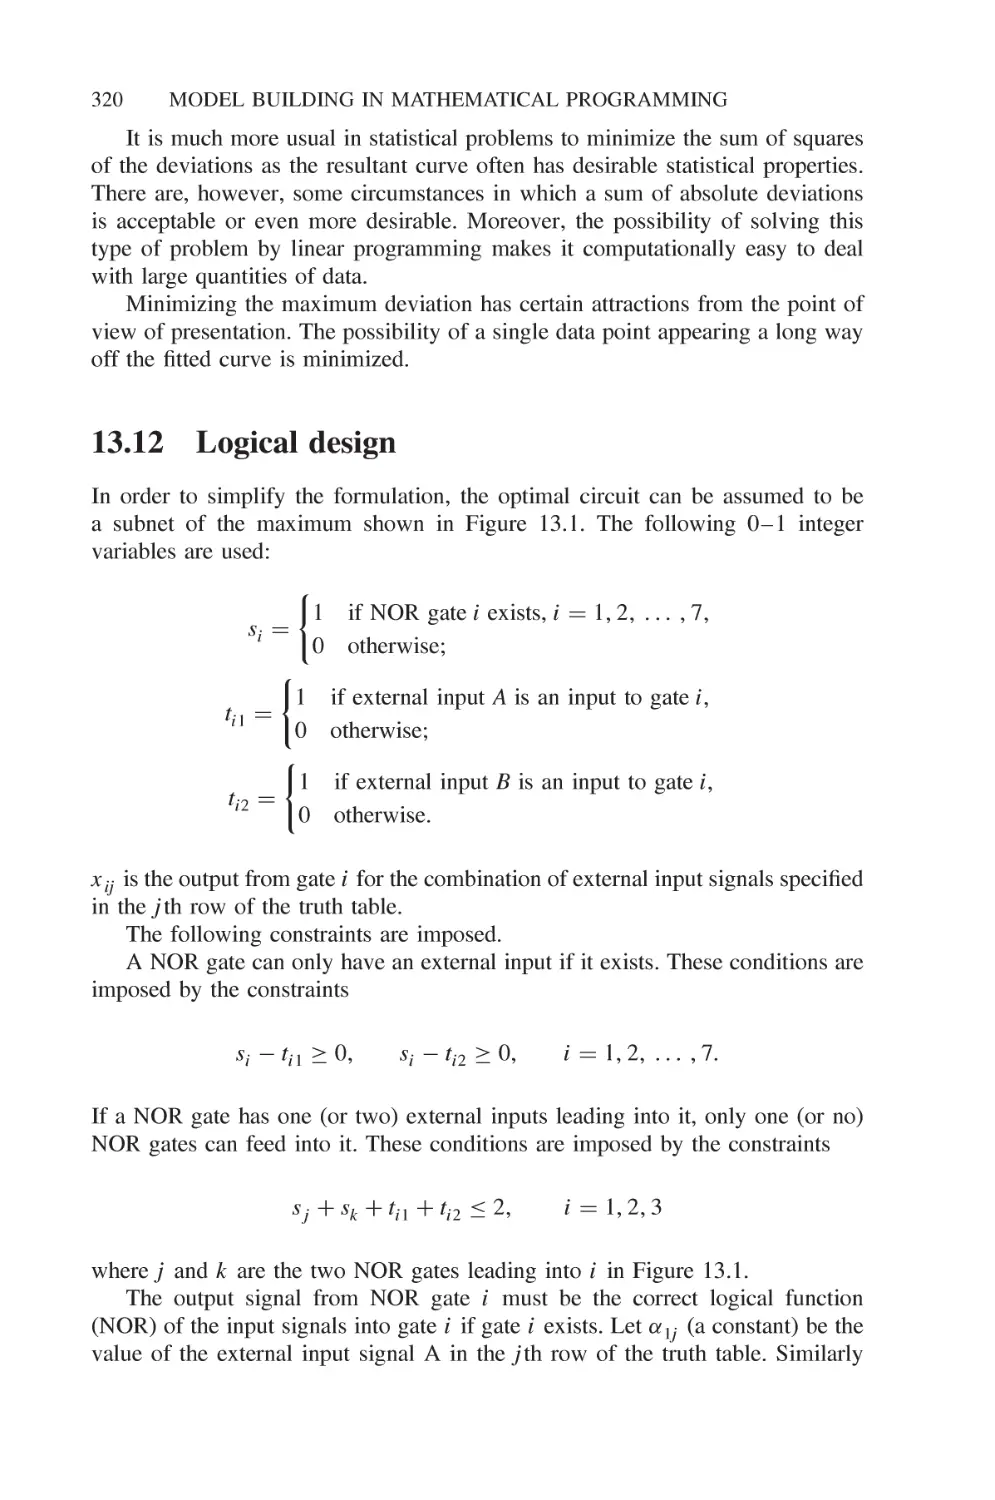 13.12 Logical design